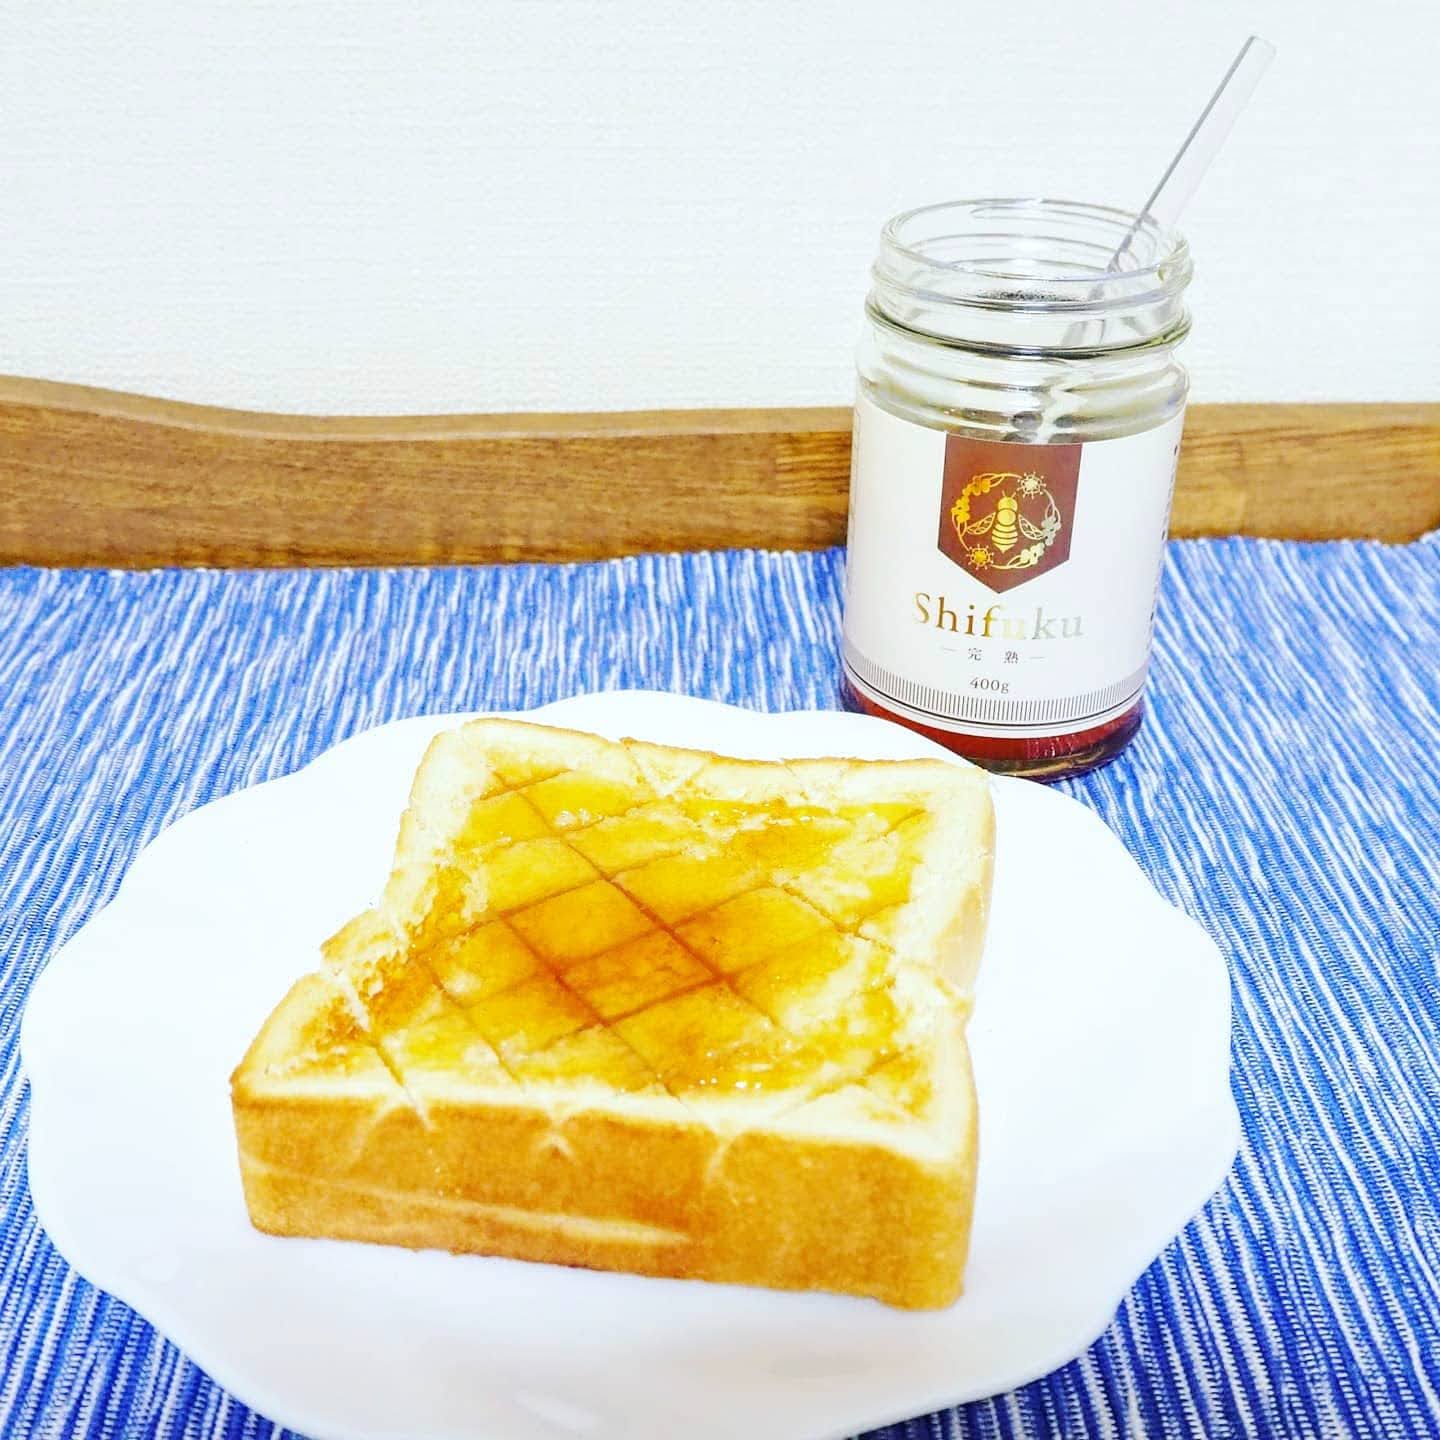 Labee Store Longan Honey ロンガンハニー Shifuku 至福 400g レシピ はちみつ塩バタートースト